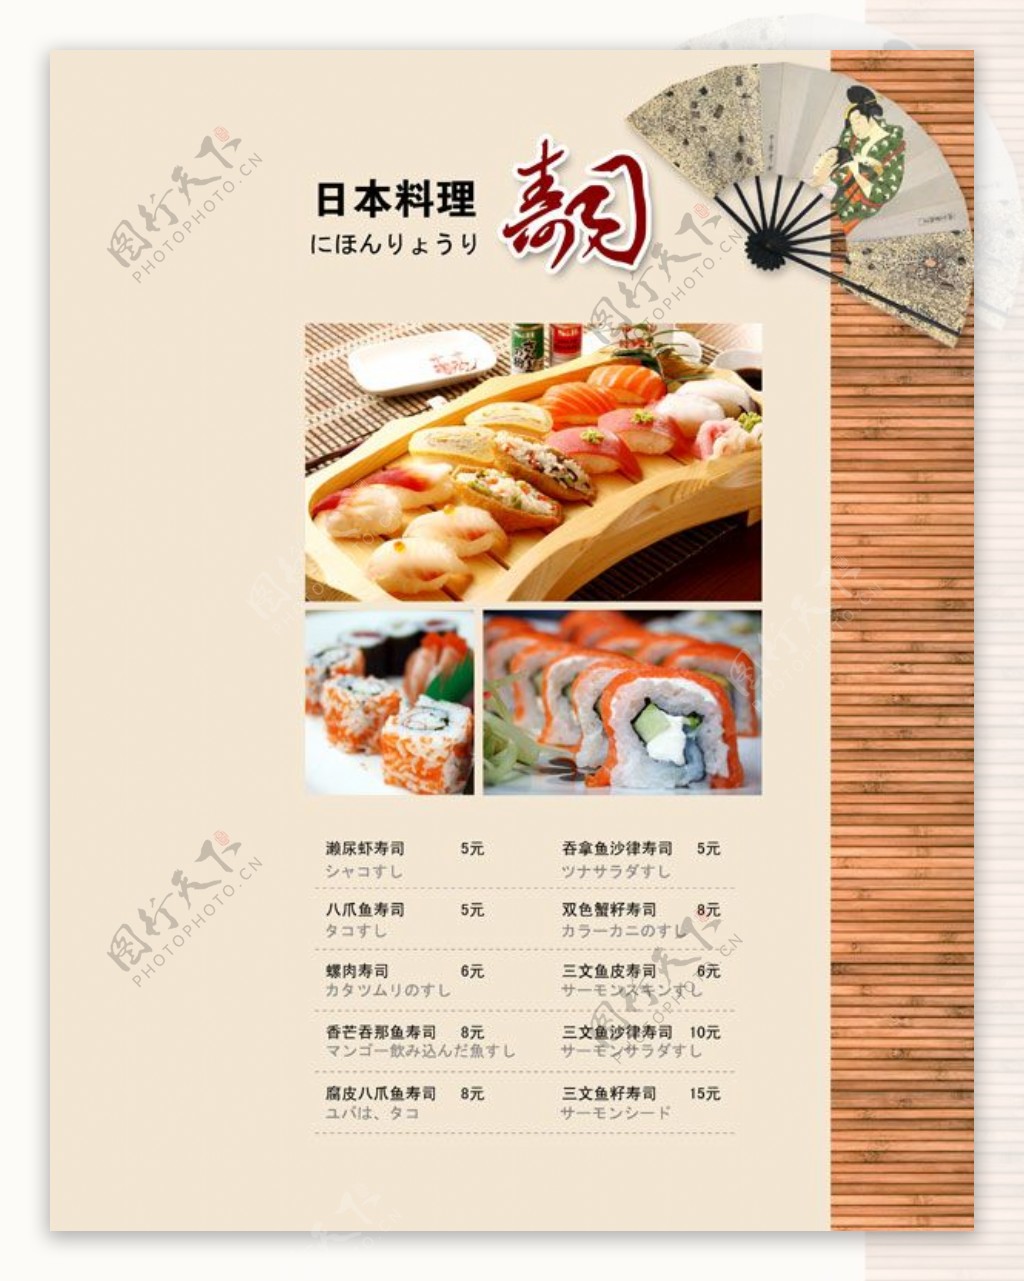 日本料理寿司菜单